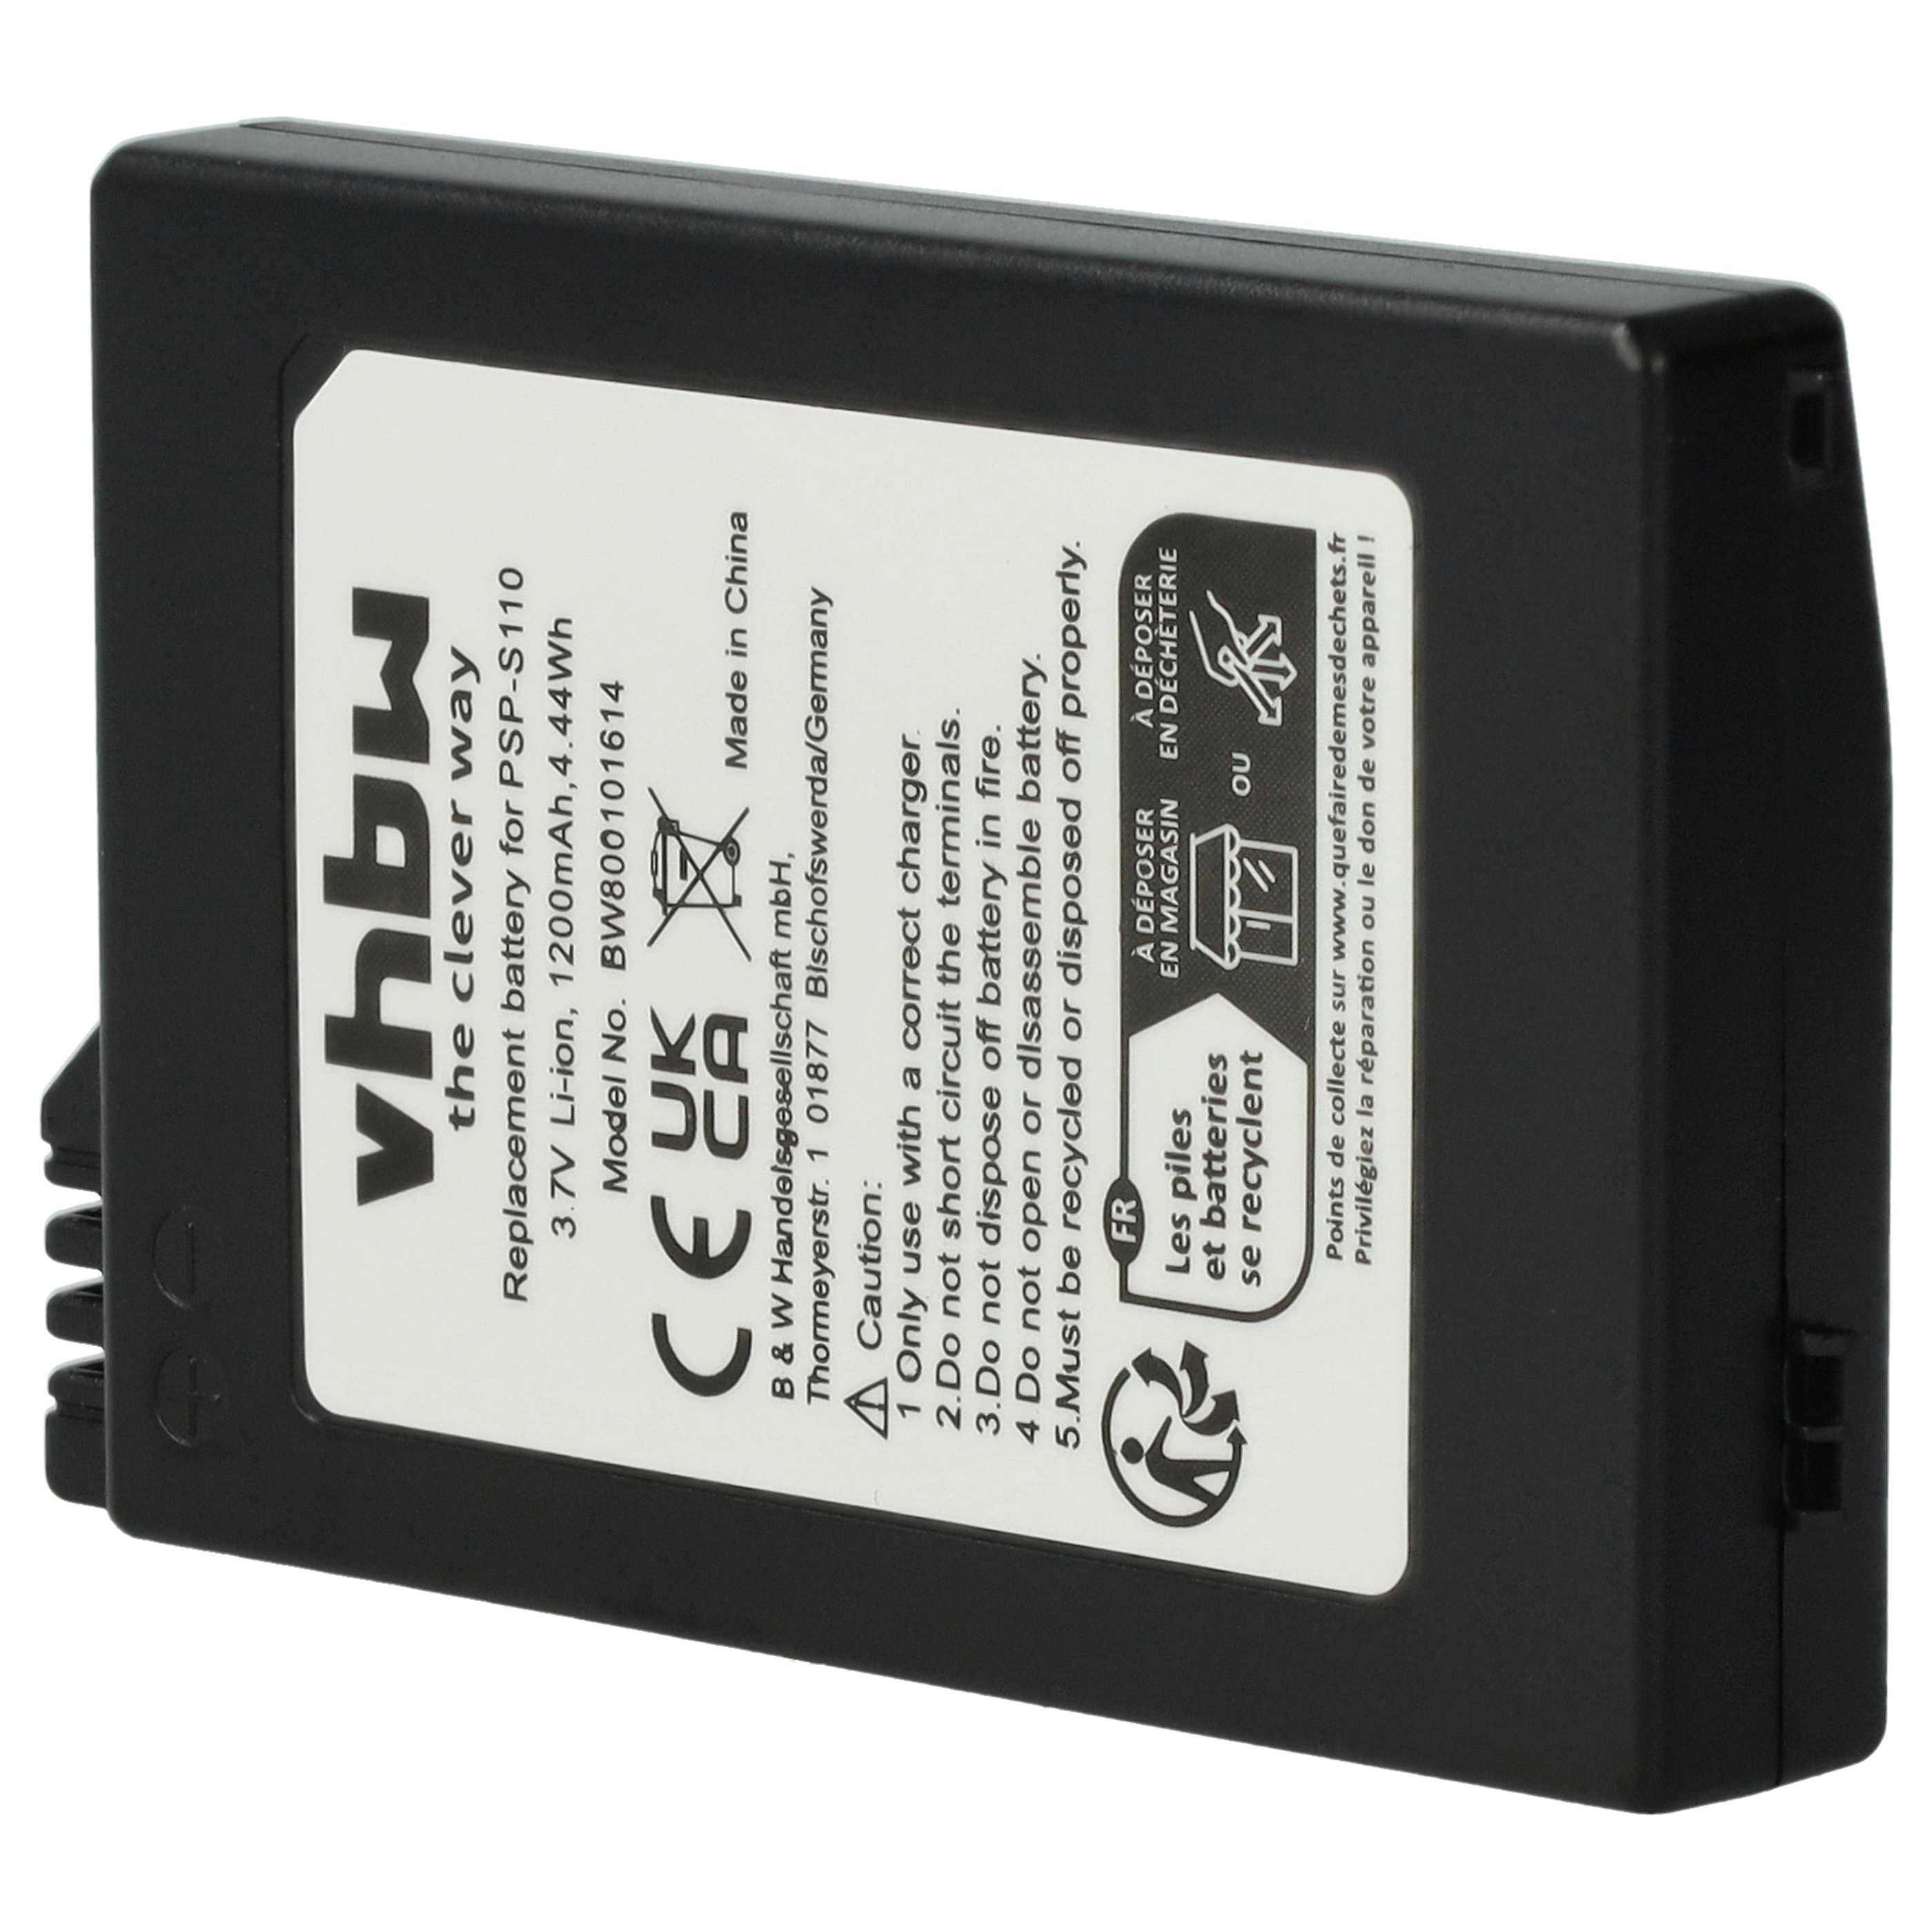 Batterie remplace Sony PSP-S110 remplace Sony PSP-S110 pour console de jeux - 1200mAh, 3,7V